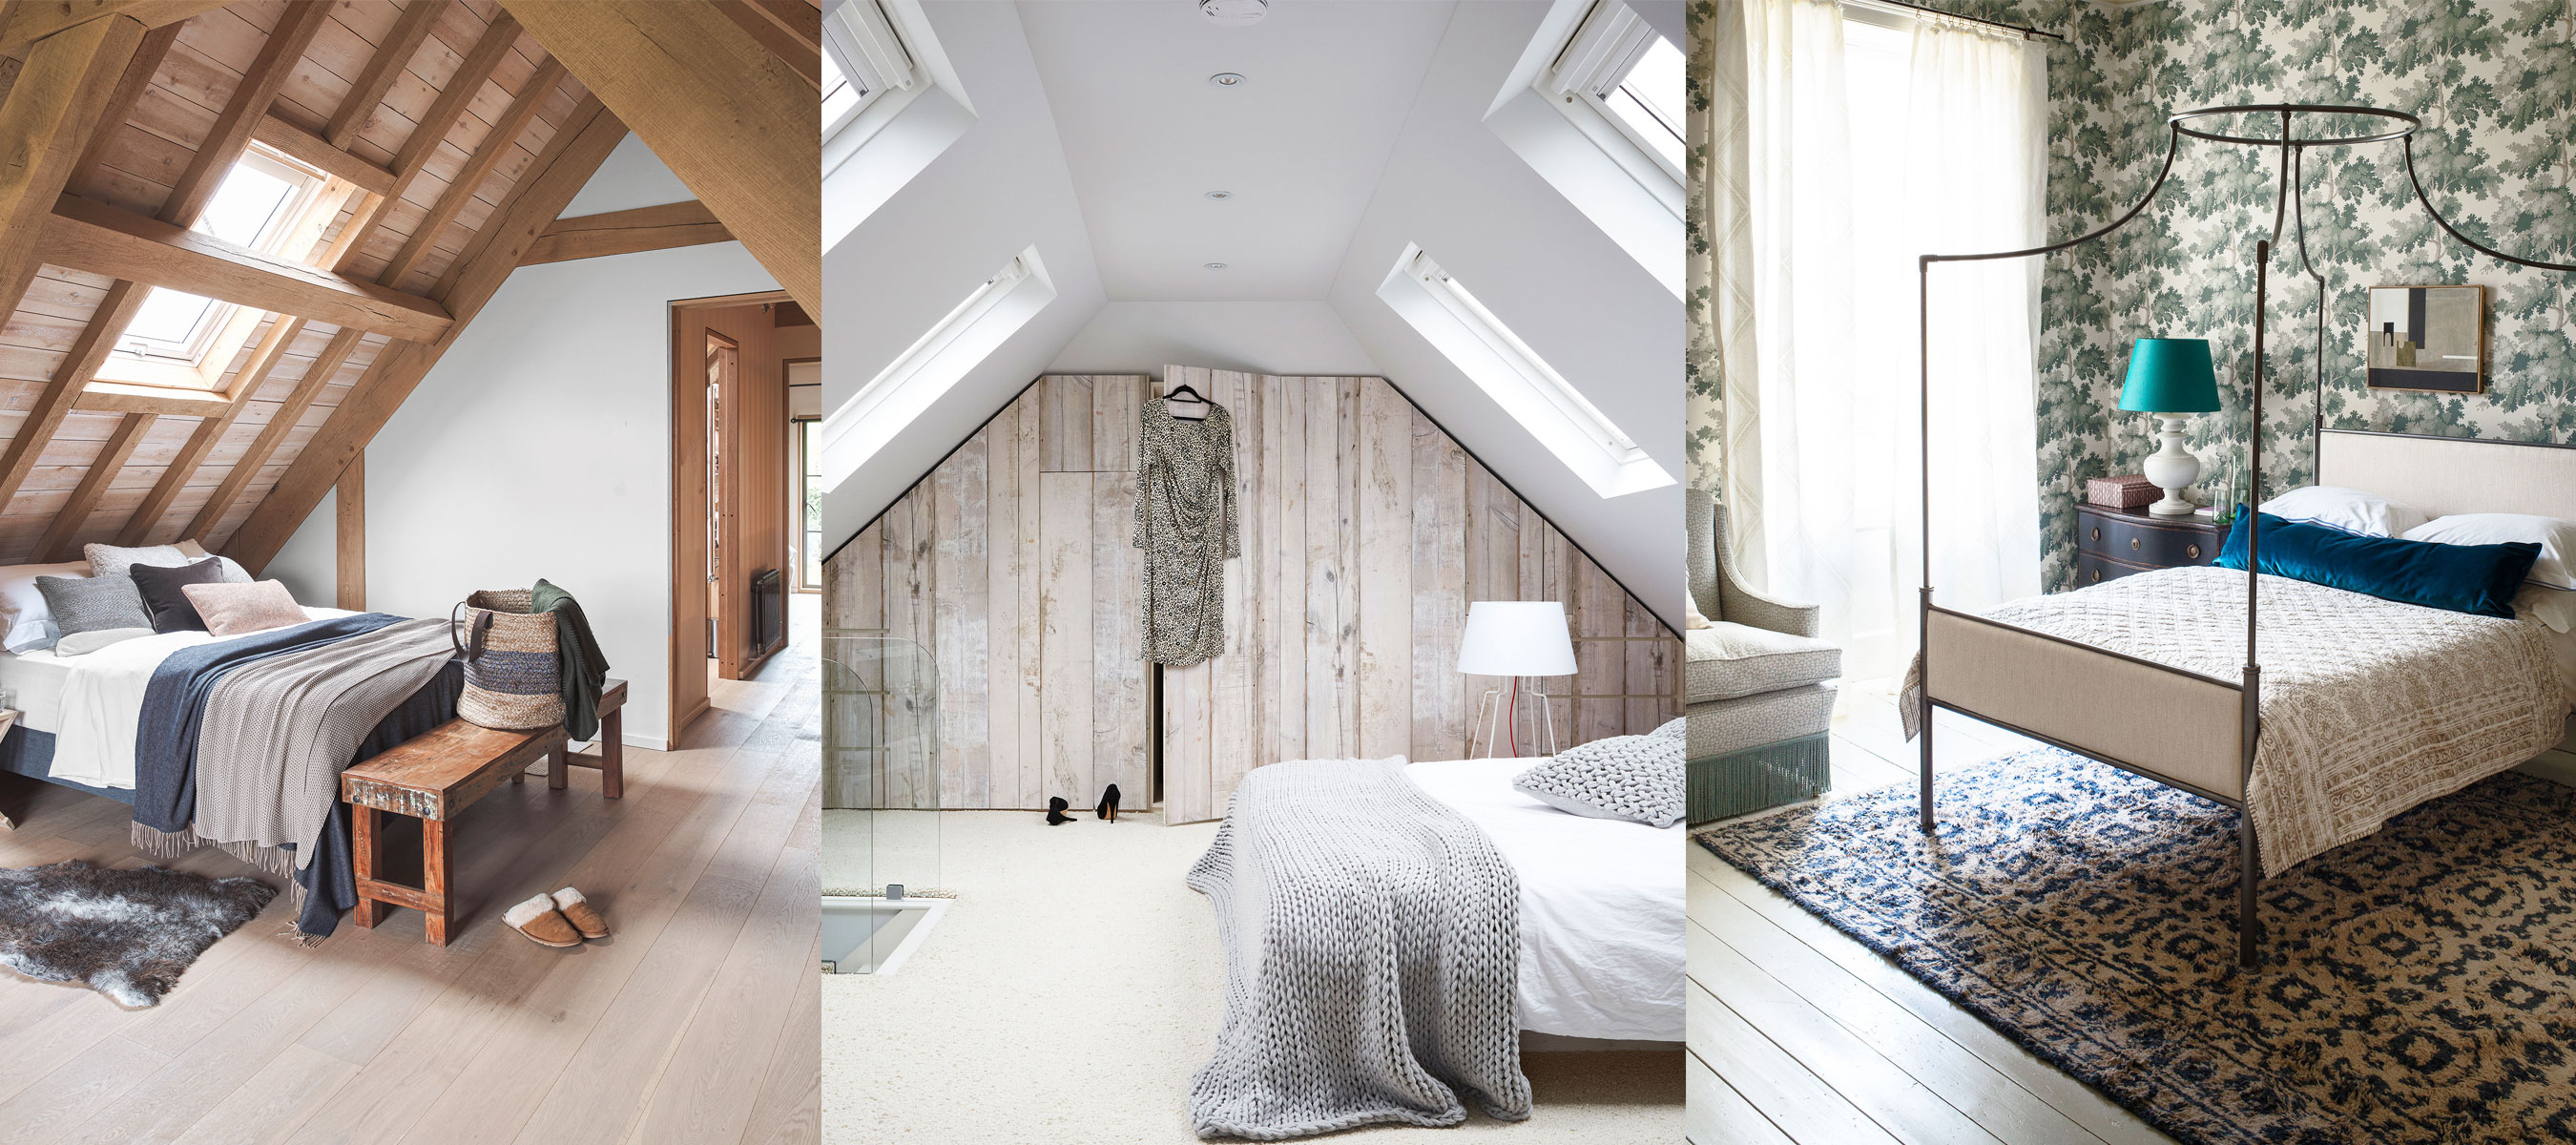 Attic Bedroom Ideas: 10 Inspiring Designs For Your Loft |